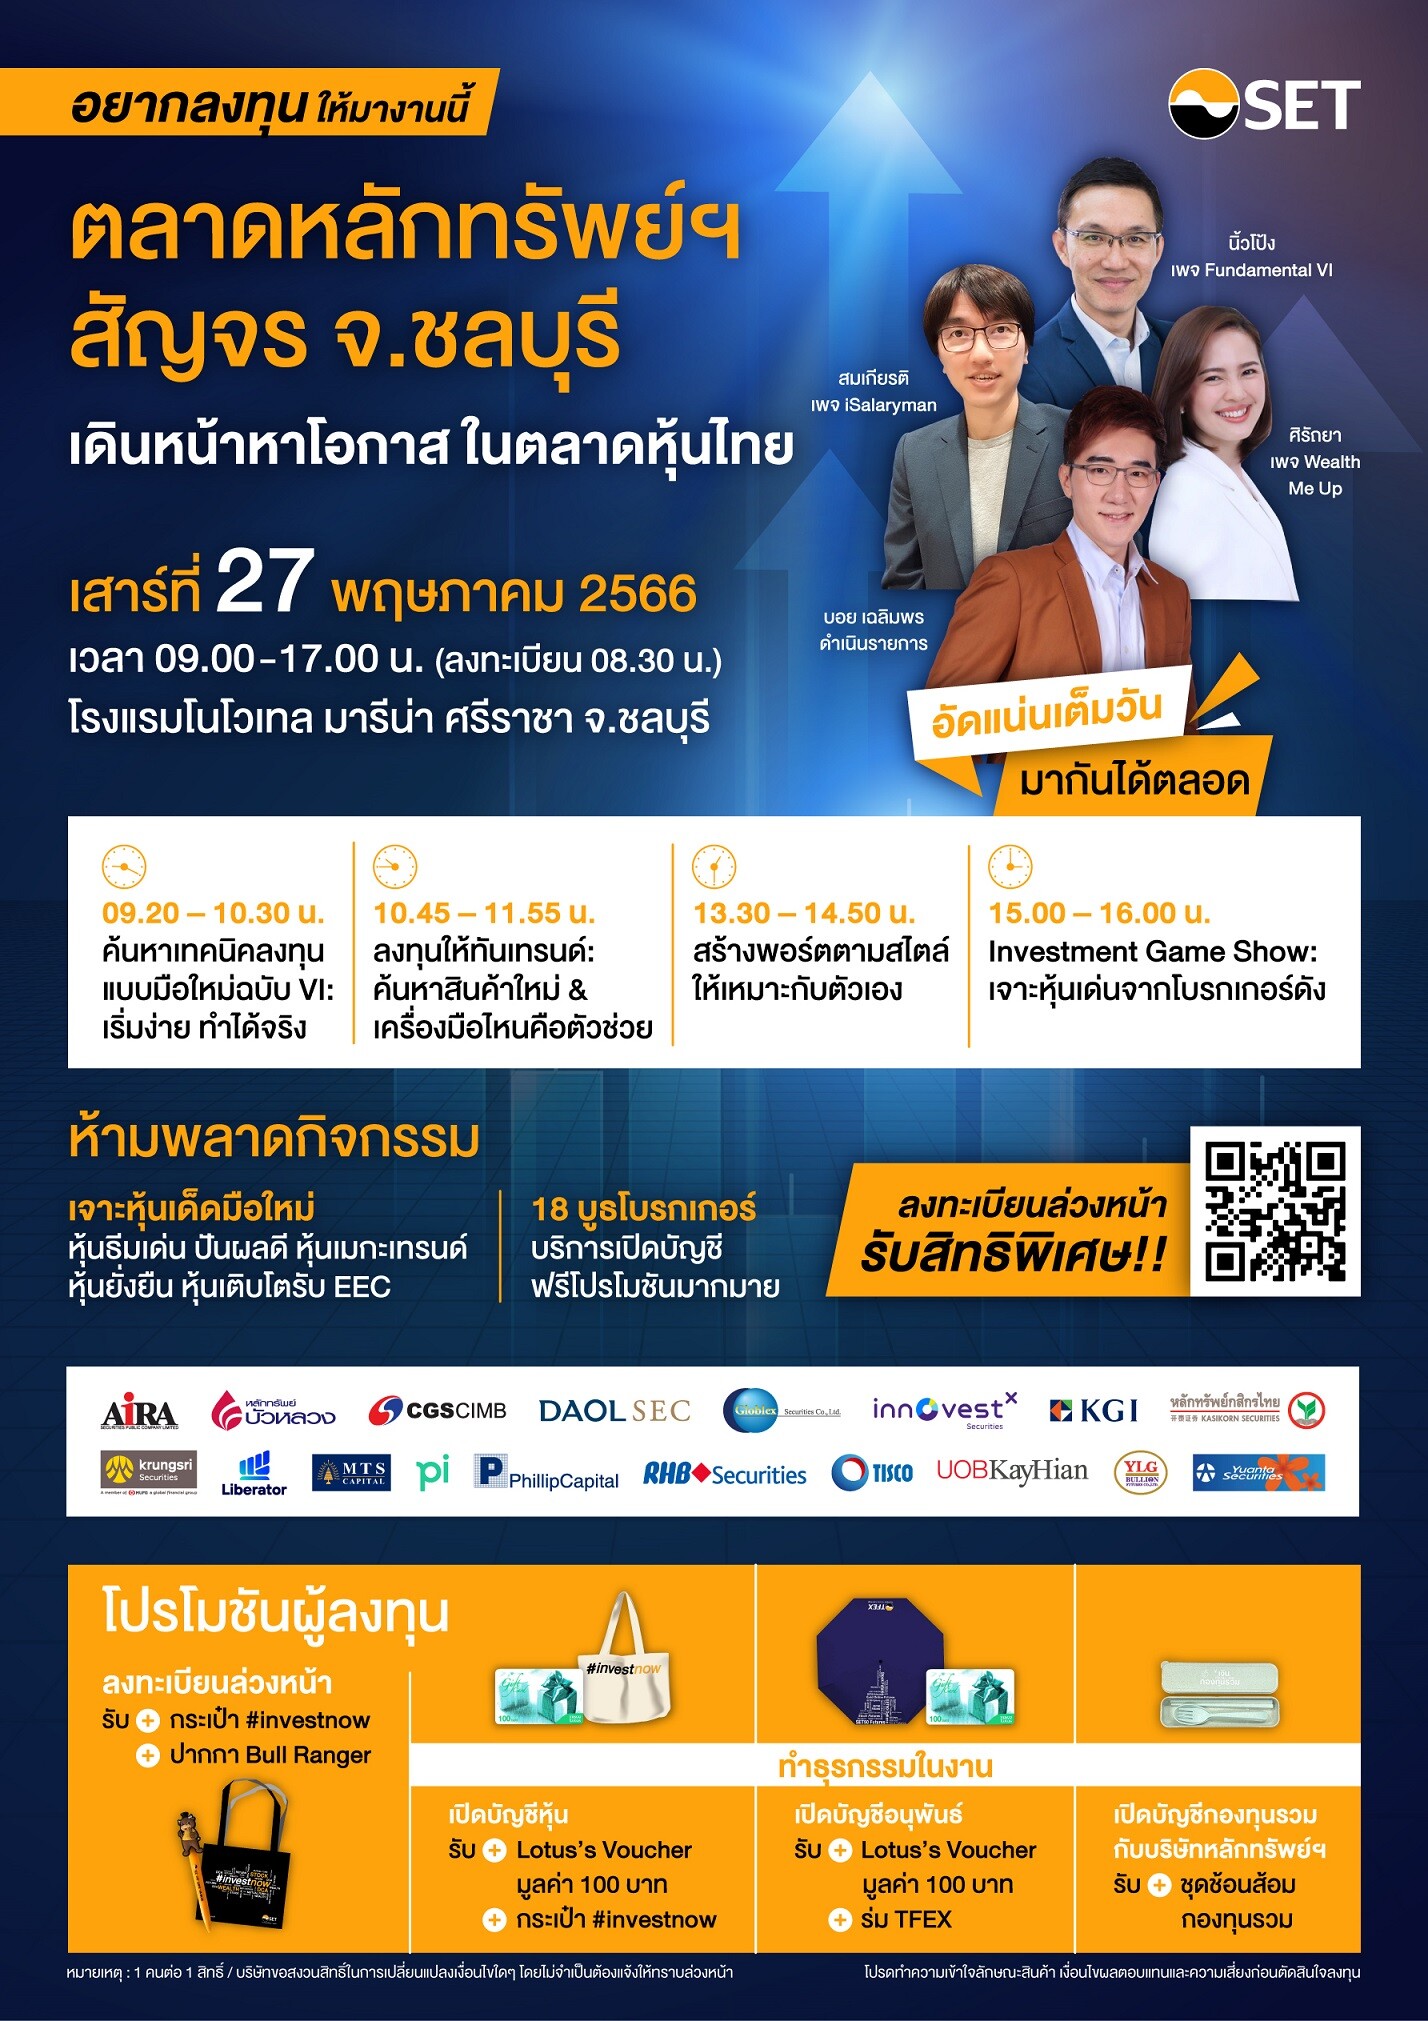 ตลาดหลักทรัพย์ฯ สัญจร ชวนชาวชลบุรี "เดินหน้าหาโอกาส ในตลาดหุ้นไทย" เสาร์ 27 พ.ค. นี้